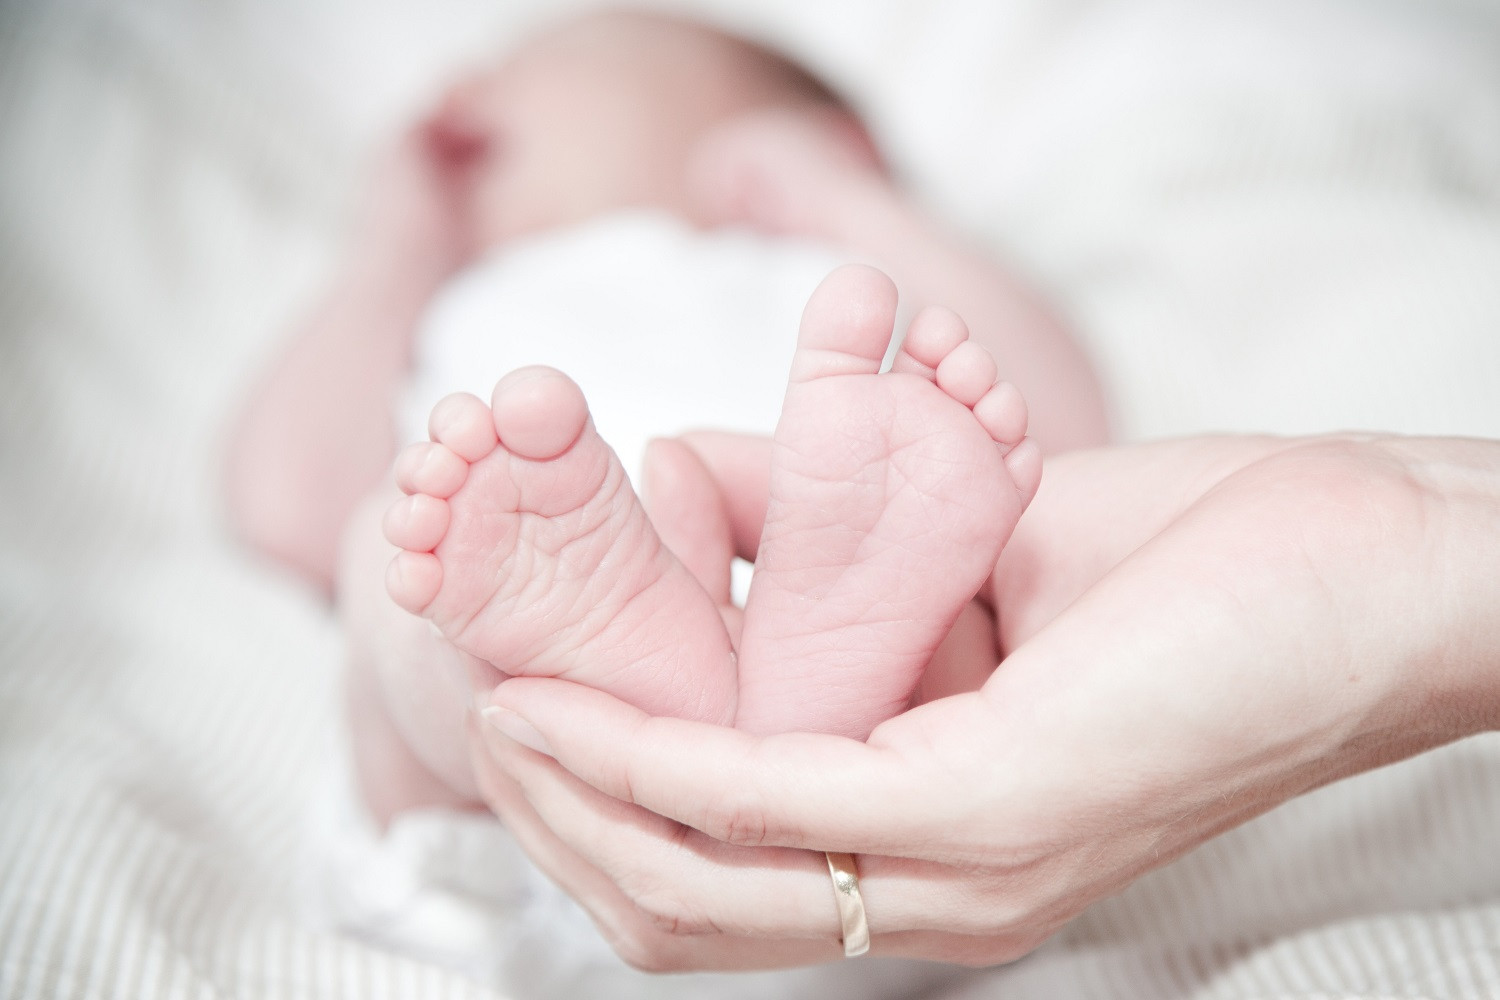 Υπουργείο Εργασίας: Εγκρίθηκε κονδύλι για την καταβολή του επιδόματος γέννησης